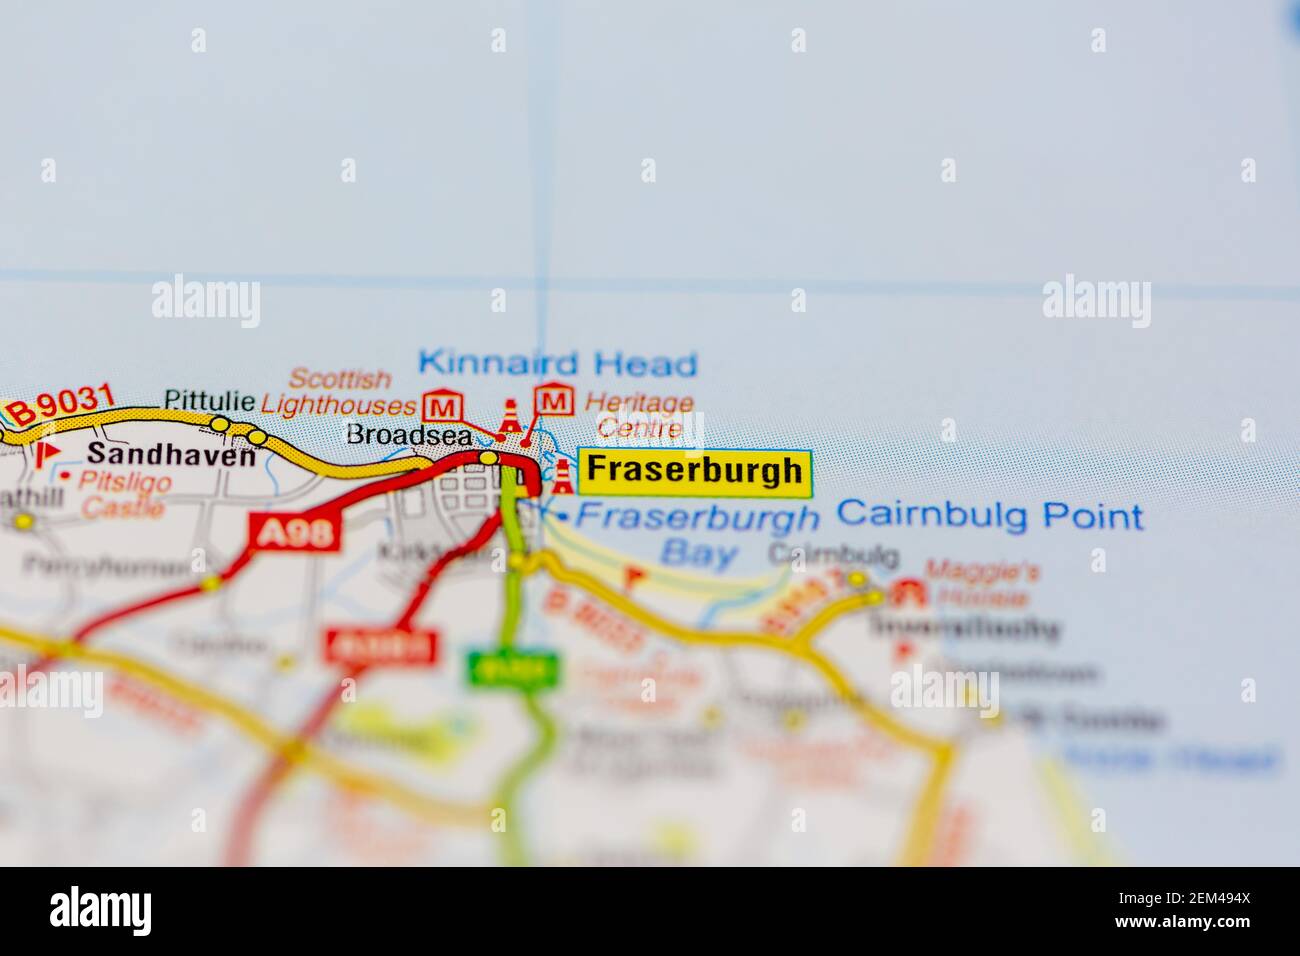 Fraserburgh affiché sur une carte routière ou une carte géographique Banque D'Images